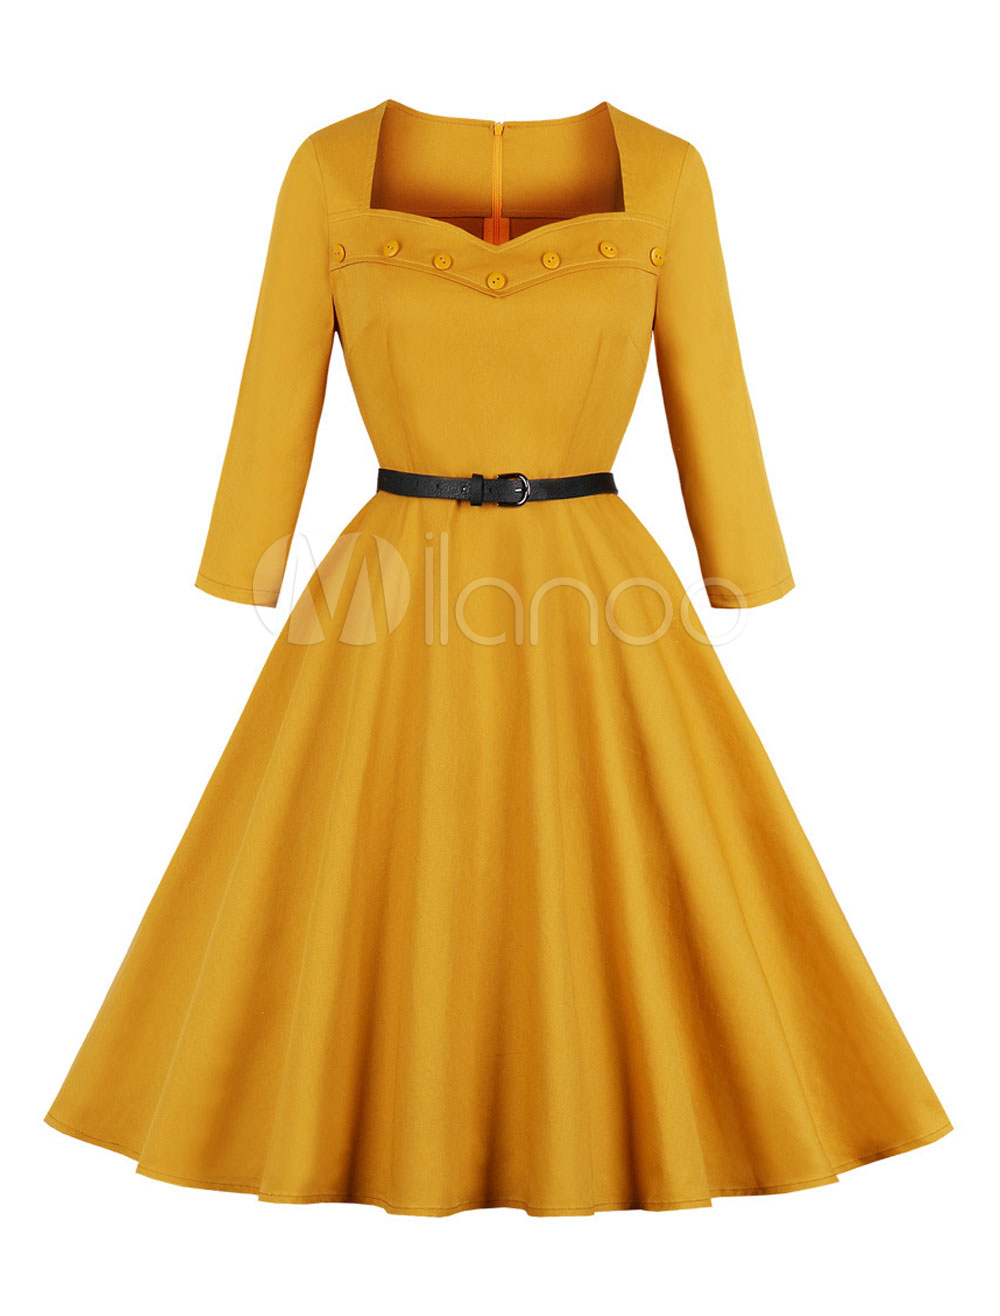 yellow rockabilly dress